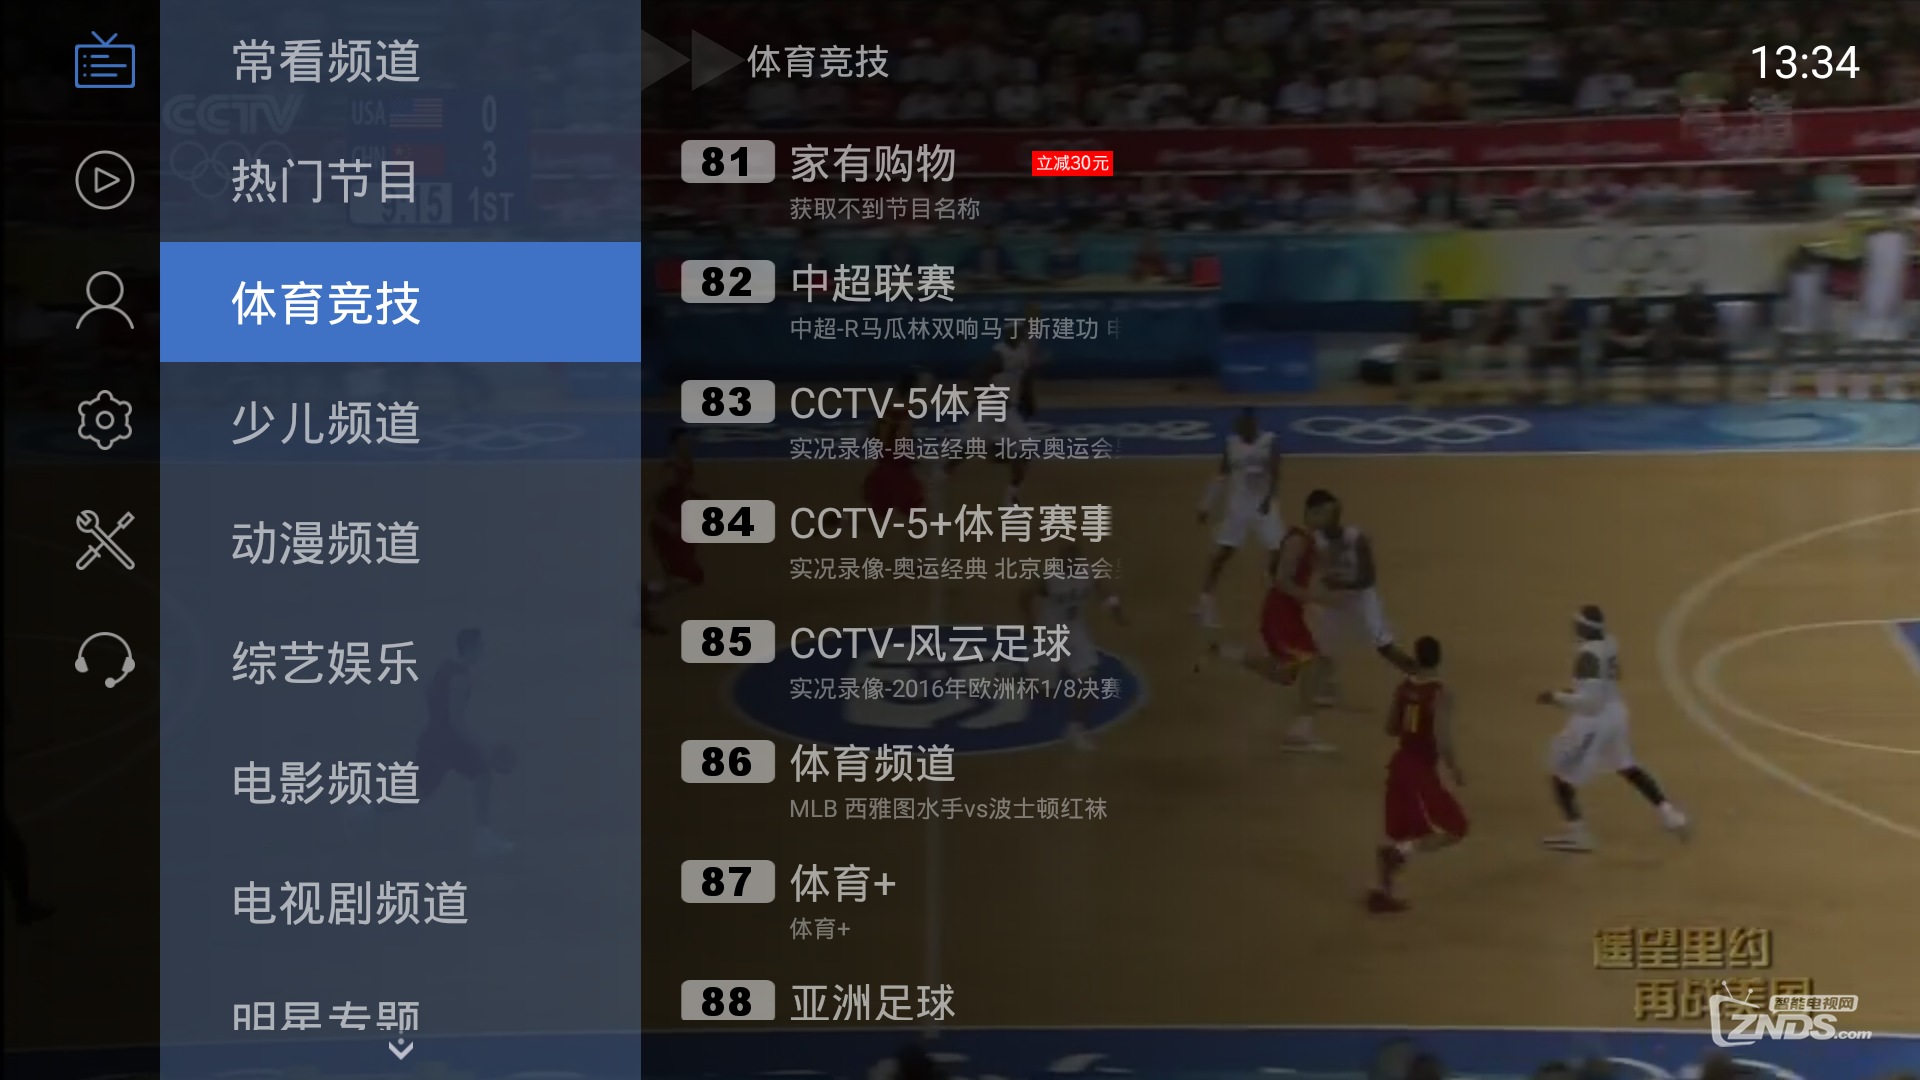 暴风TV50F免费看电视直播软件大推荐!